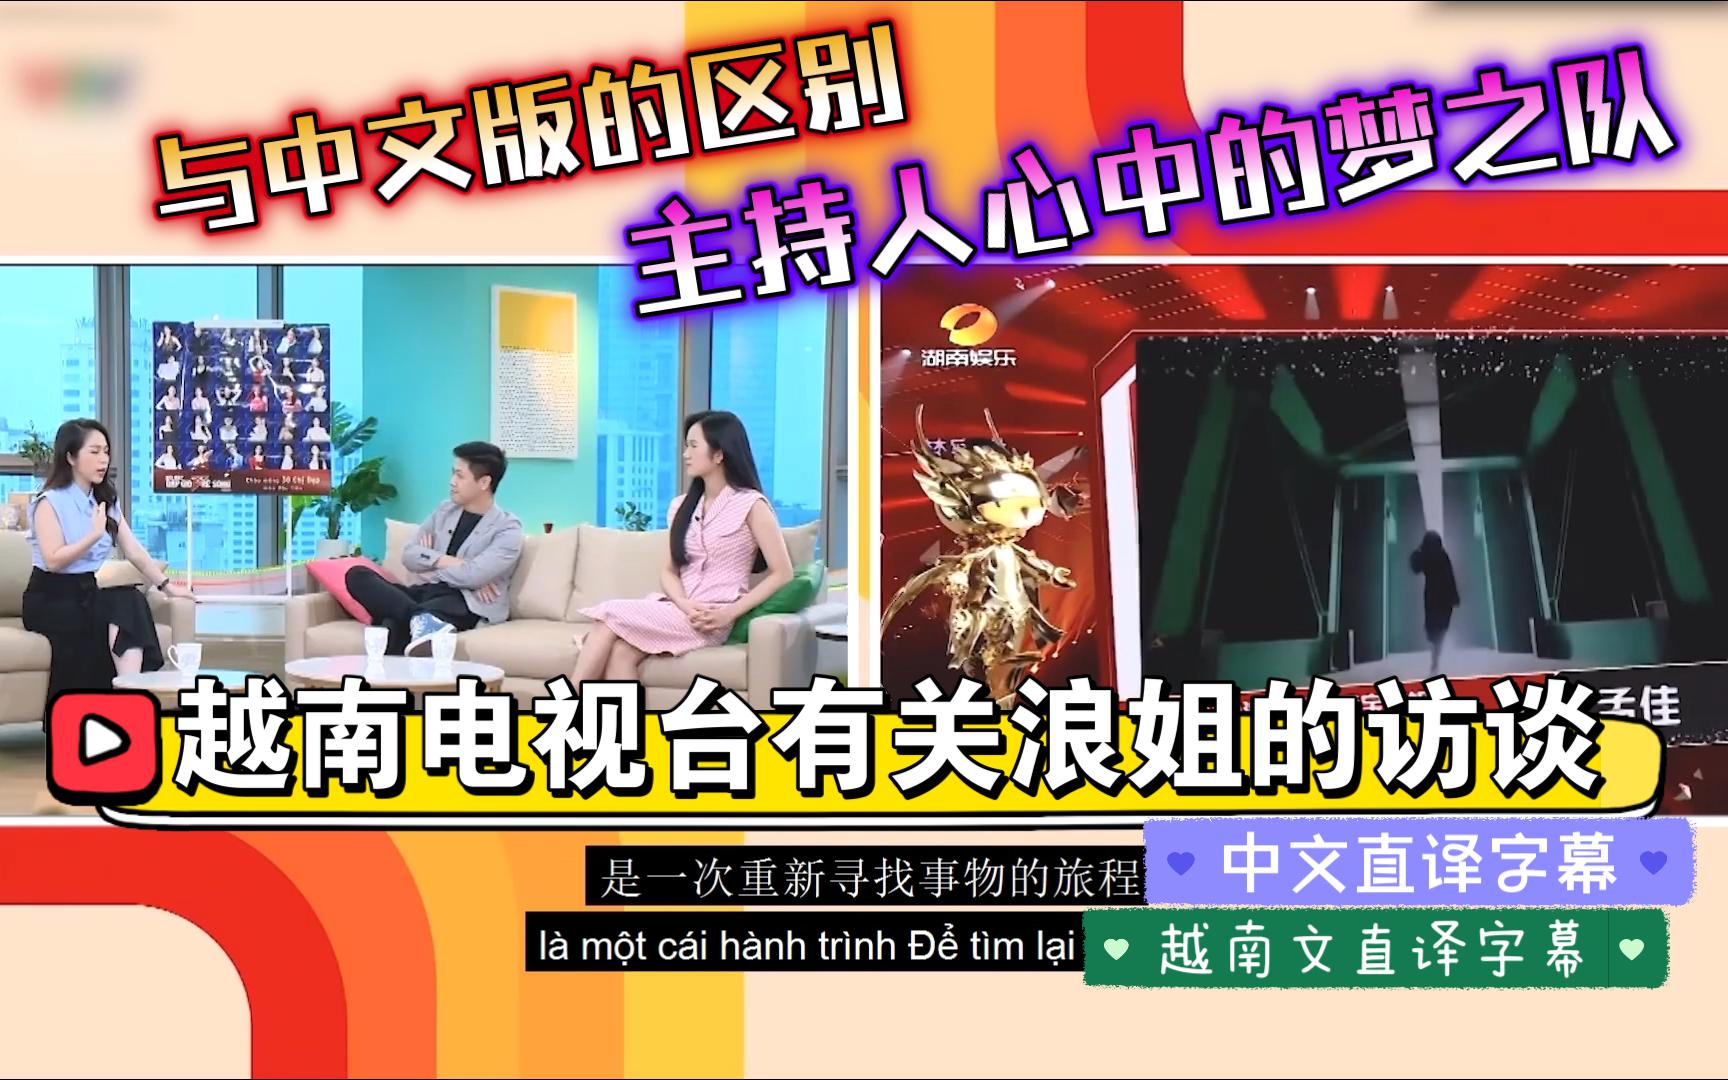 越南电视台有关浪姐的访谈（有中文直译字幕）——越南版浪姐与中国版浪姐的区别及主持人心目中的梦之队